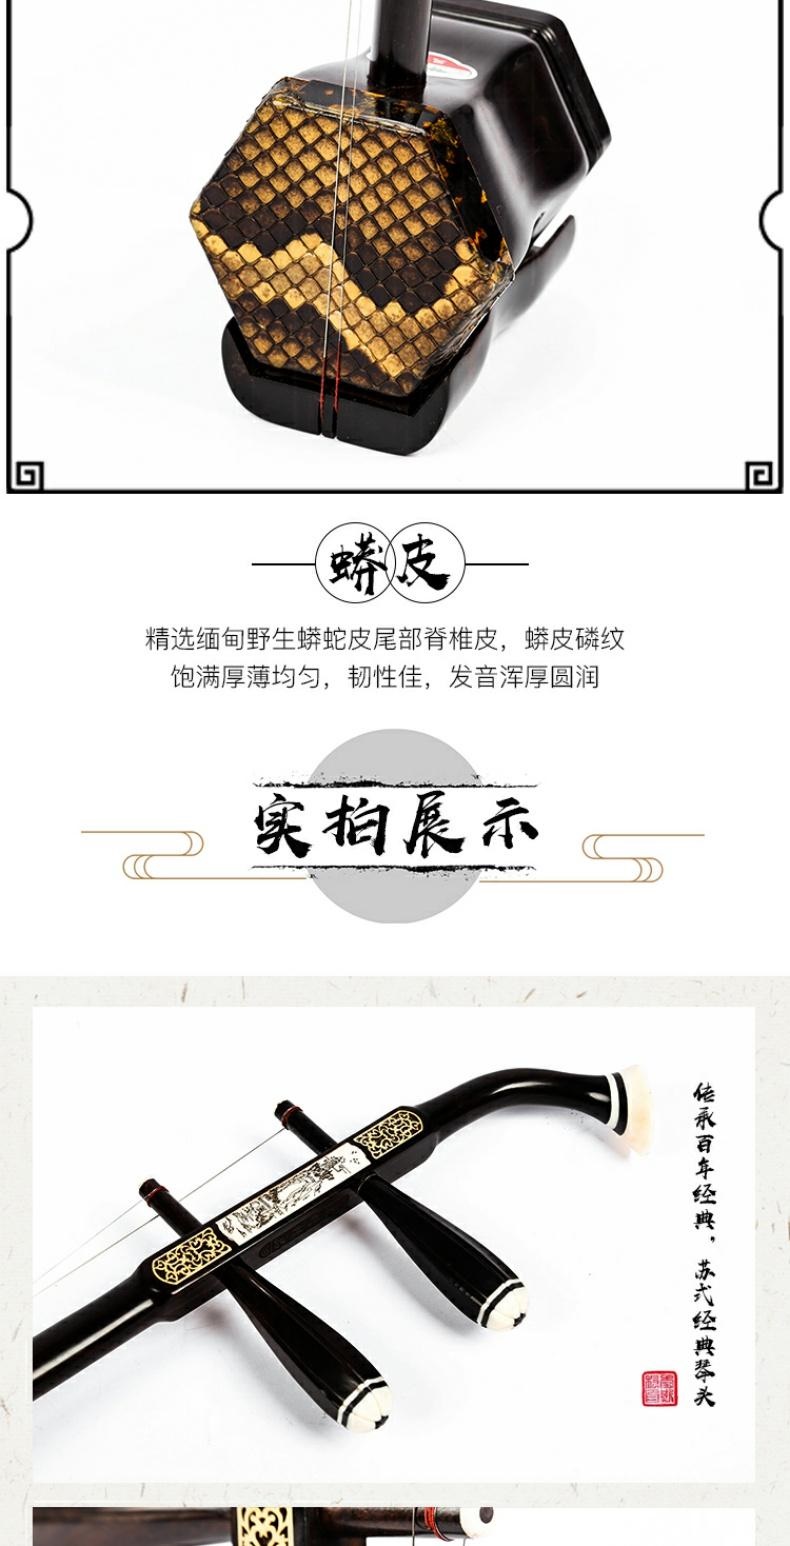 Nhạc cụ đàn nhị gỗ mun Tô Châu Xingyu cao cấp cho người mới bắt đầu, nhạc cụ dân tộc, nhà sản xuất đàn nhị chuyên nghiệp dành cho người lớn - Nhạc cụ dân tộc